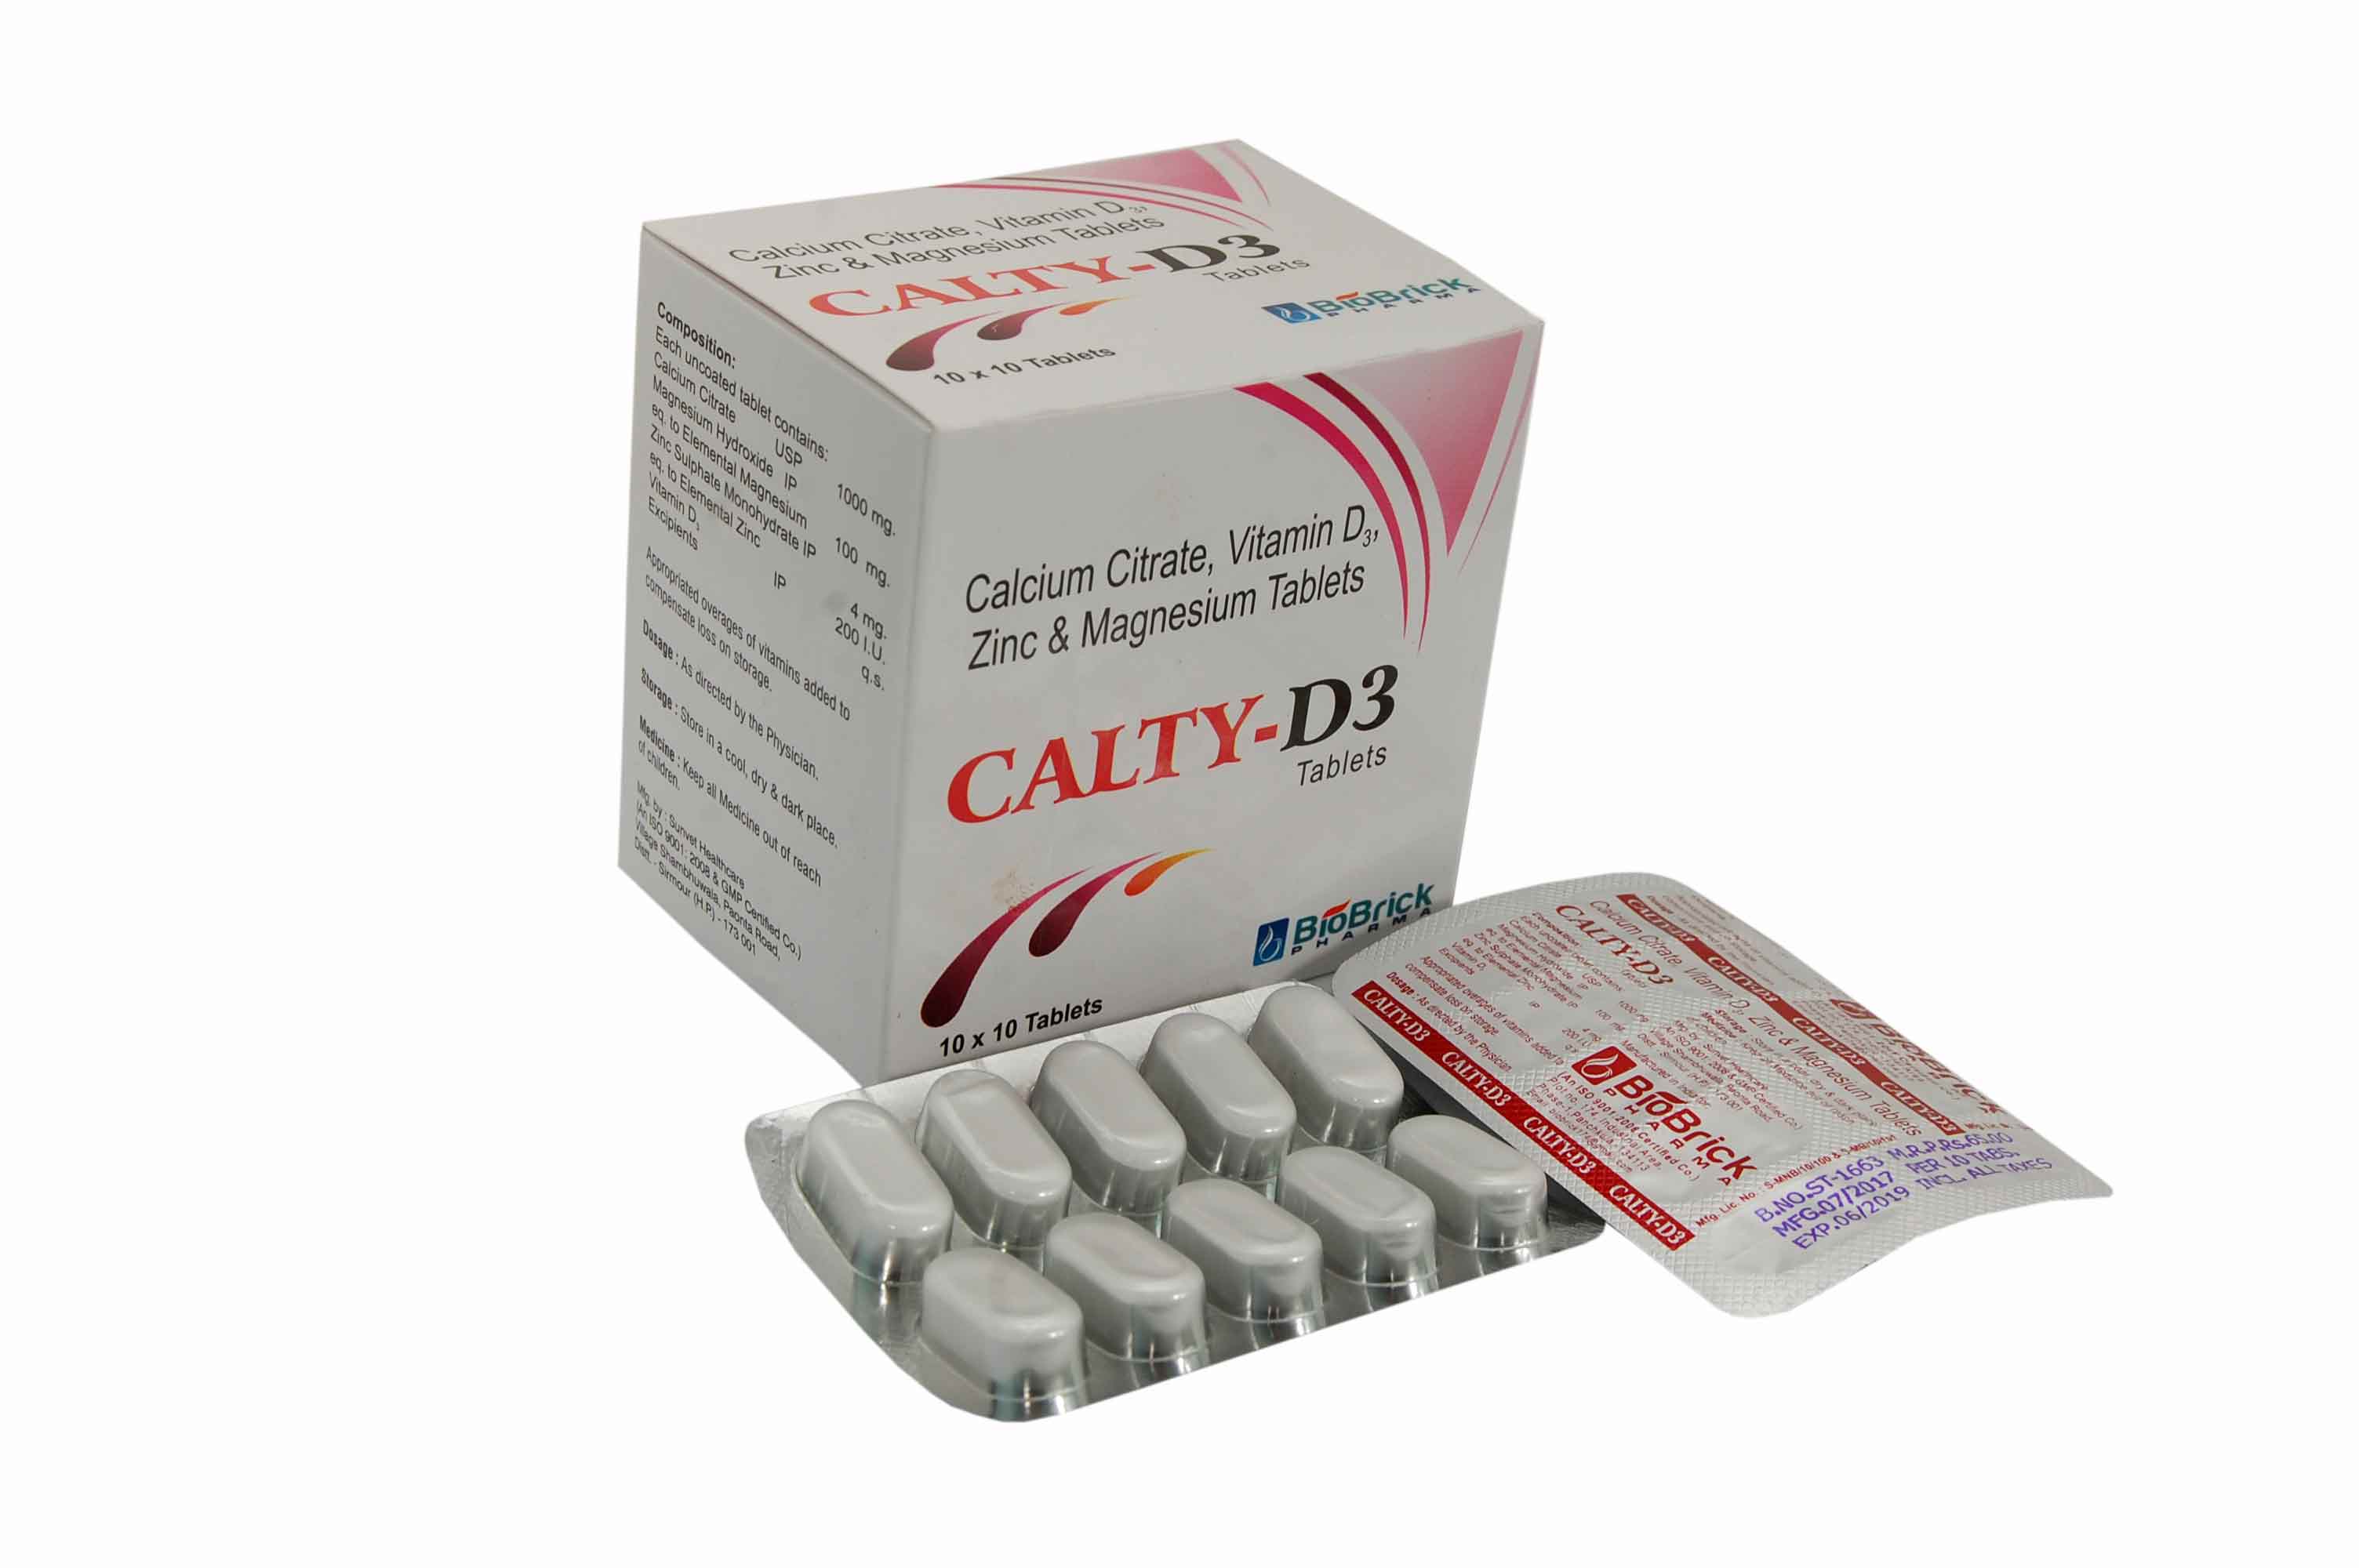 CALTY-D3